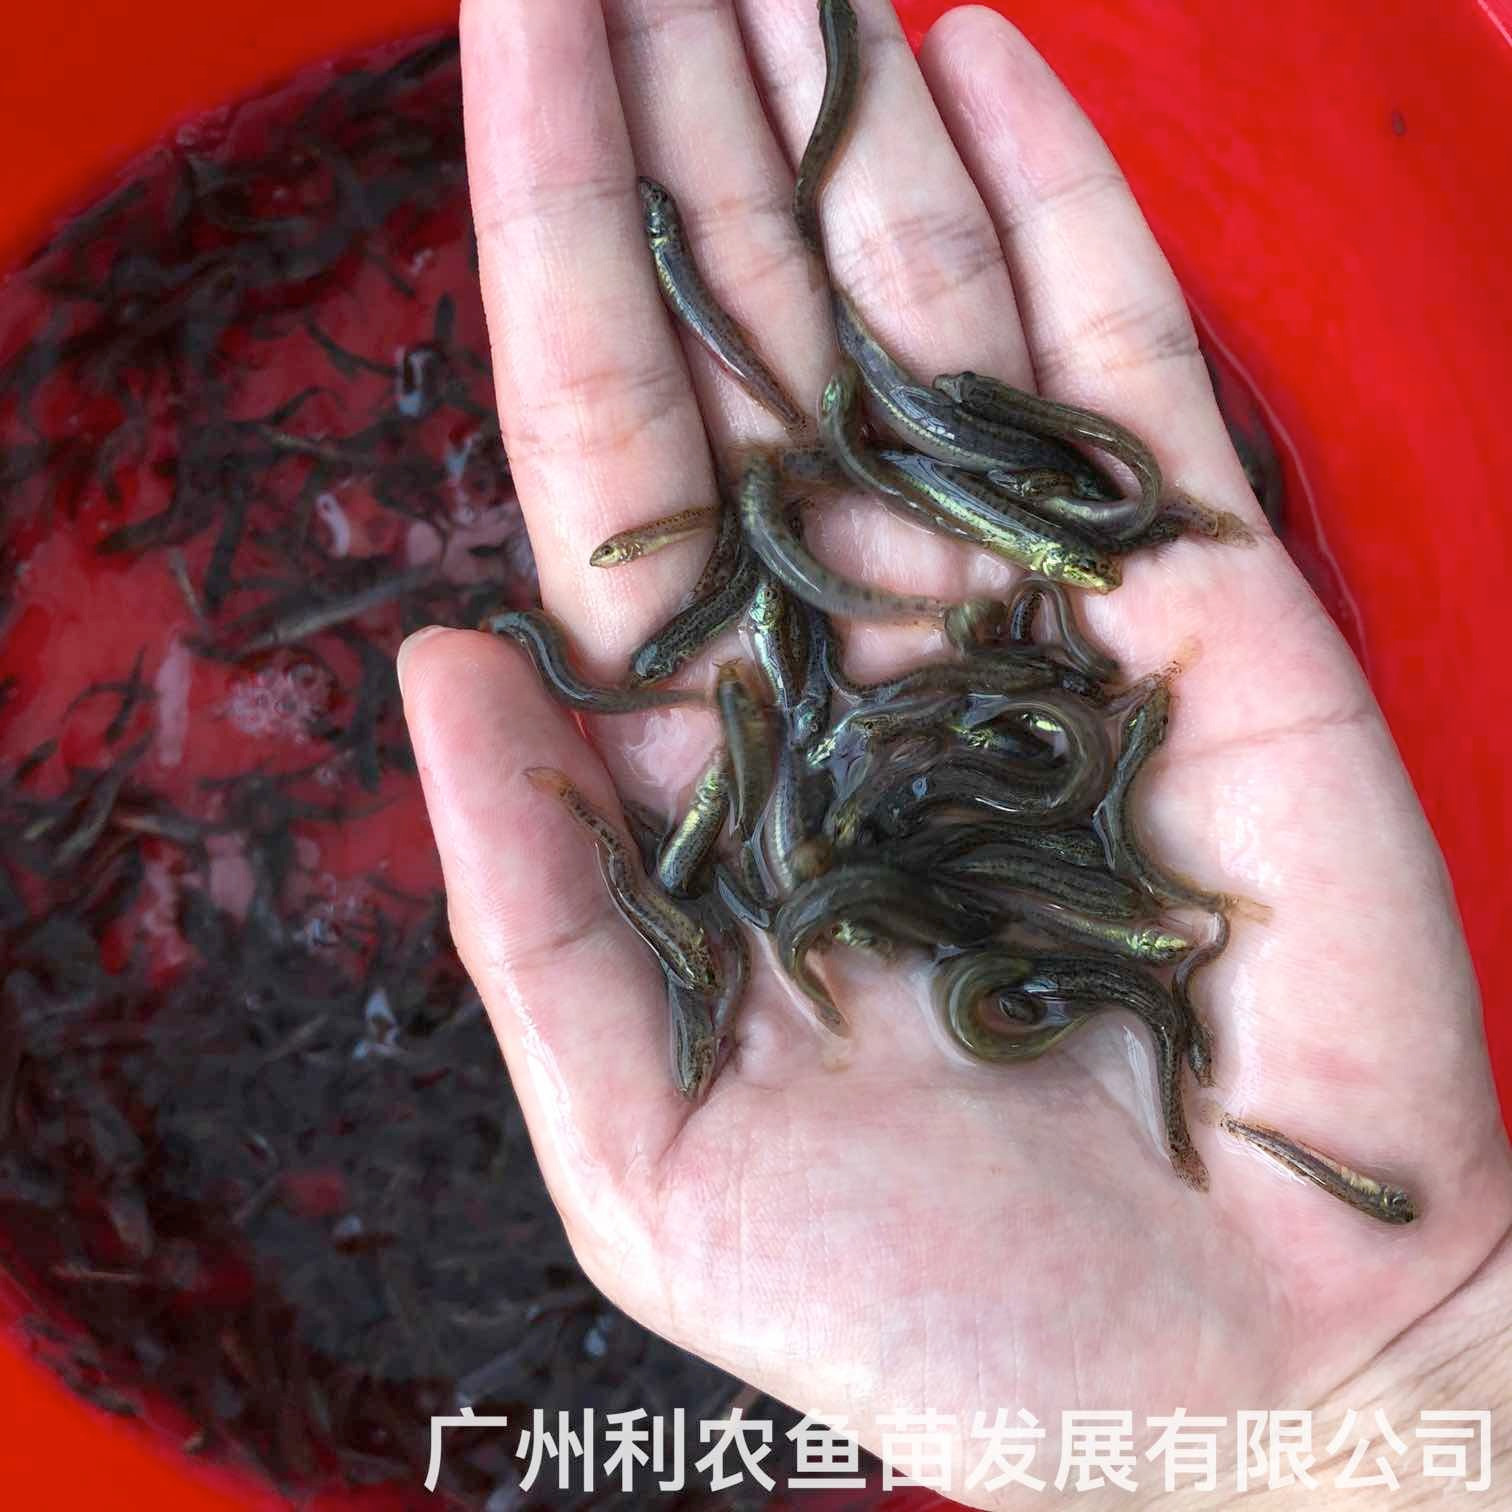 安徽池州台湾泥鳅苗出售安徽合肥泥鳅鱼苗批发